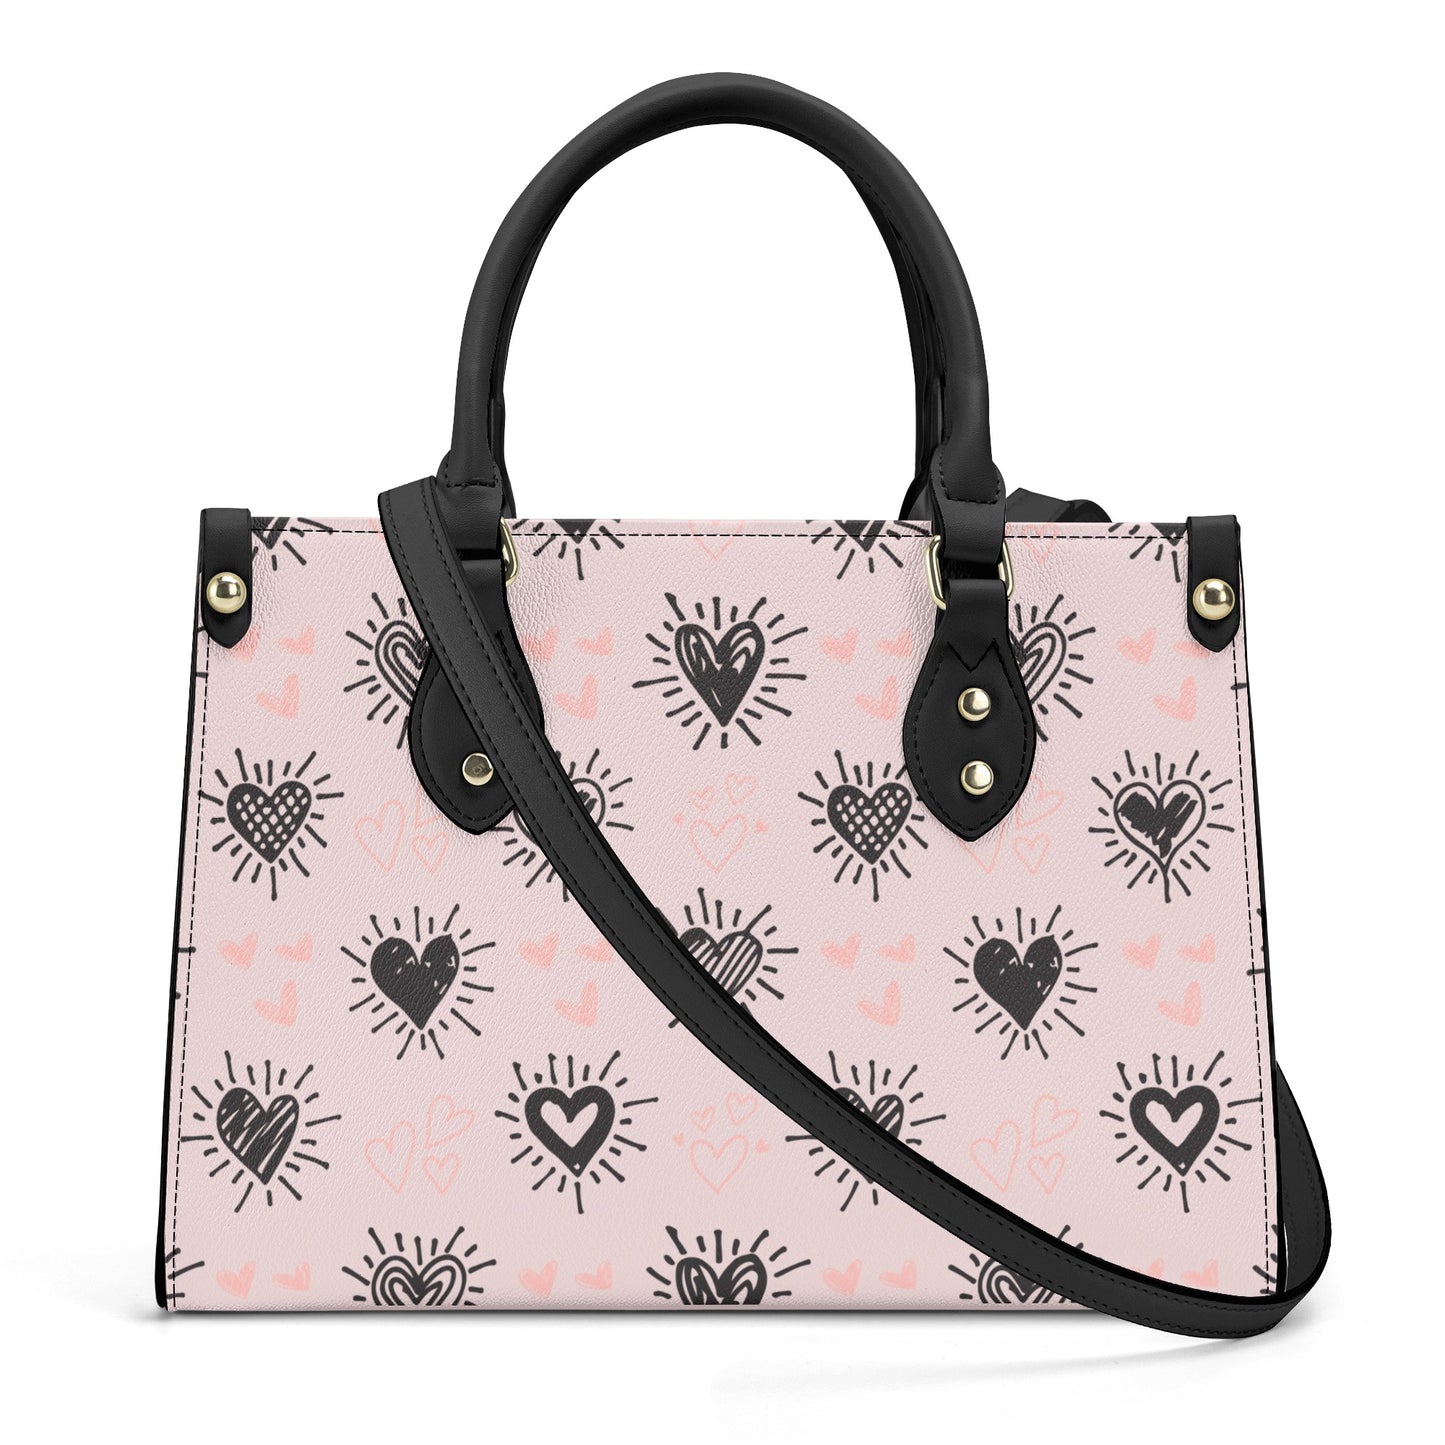 Love Note 7 Top Handle Handbag